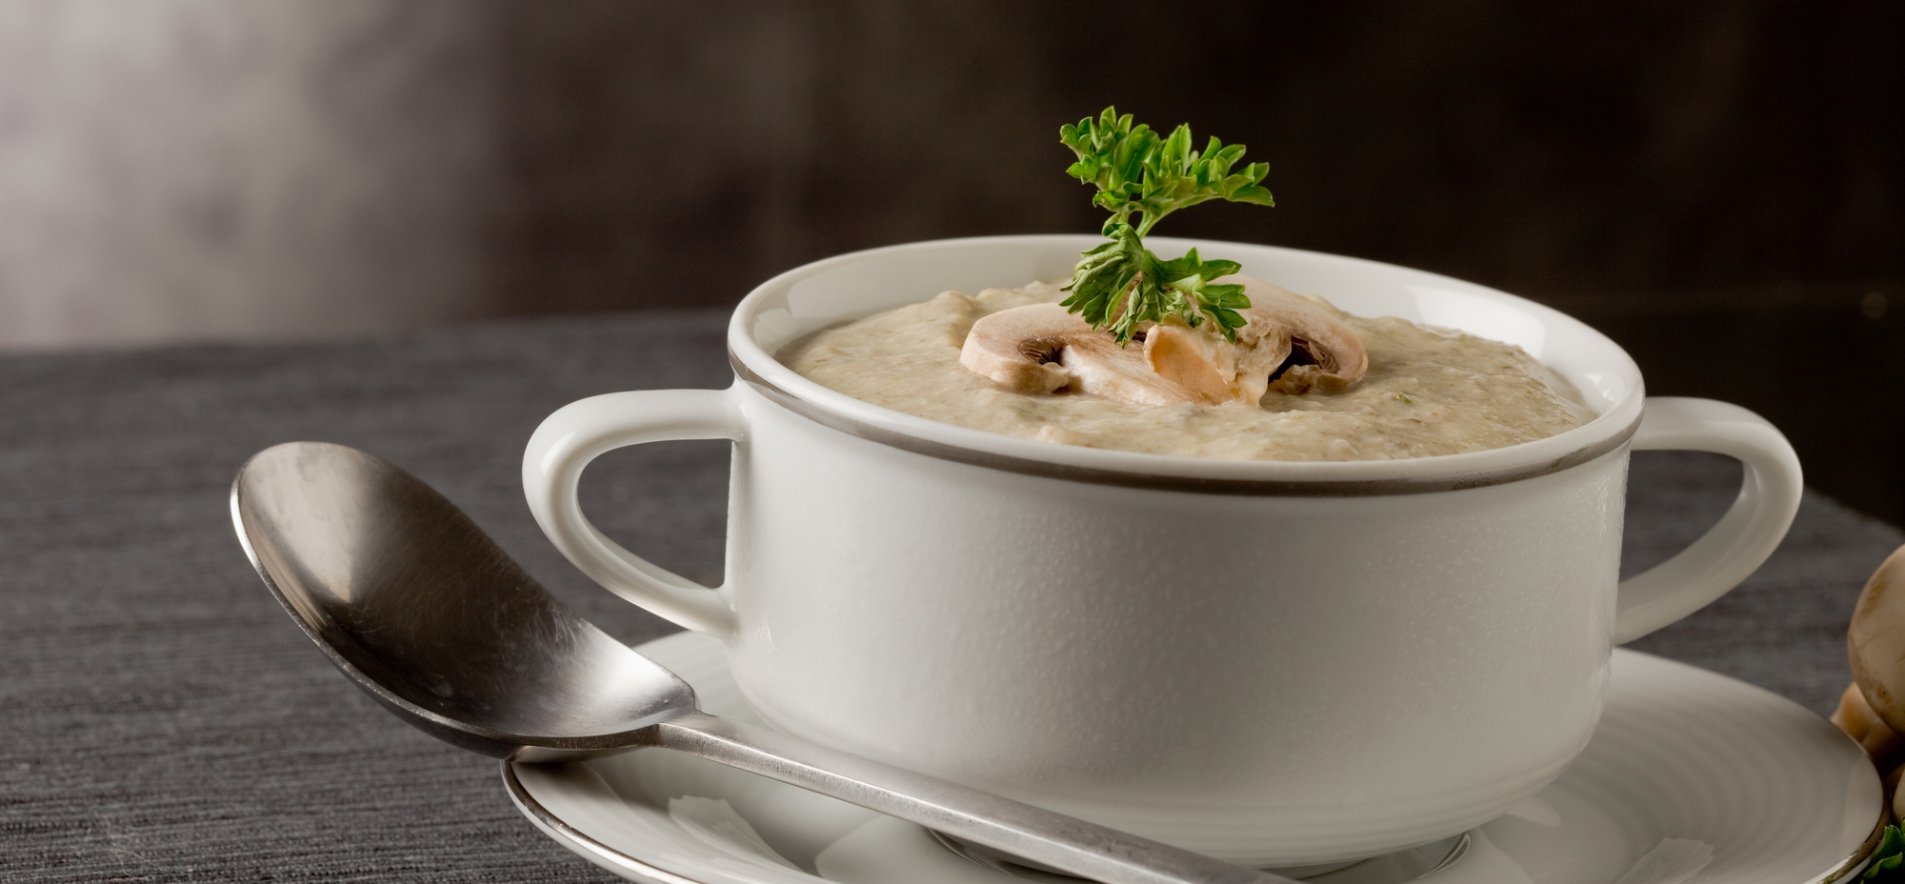 Грибной суп из маринованных грибов - пошаговый рецепт с фото на paraskevat.ru